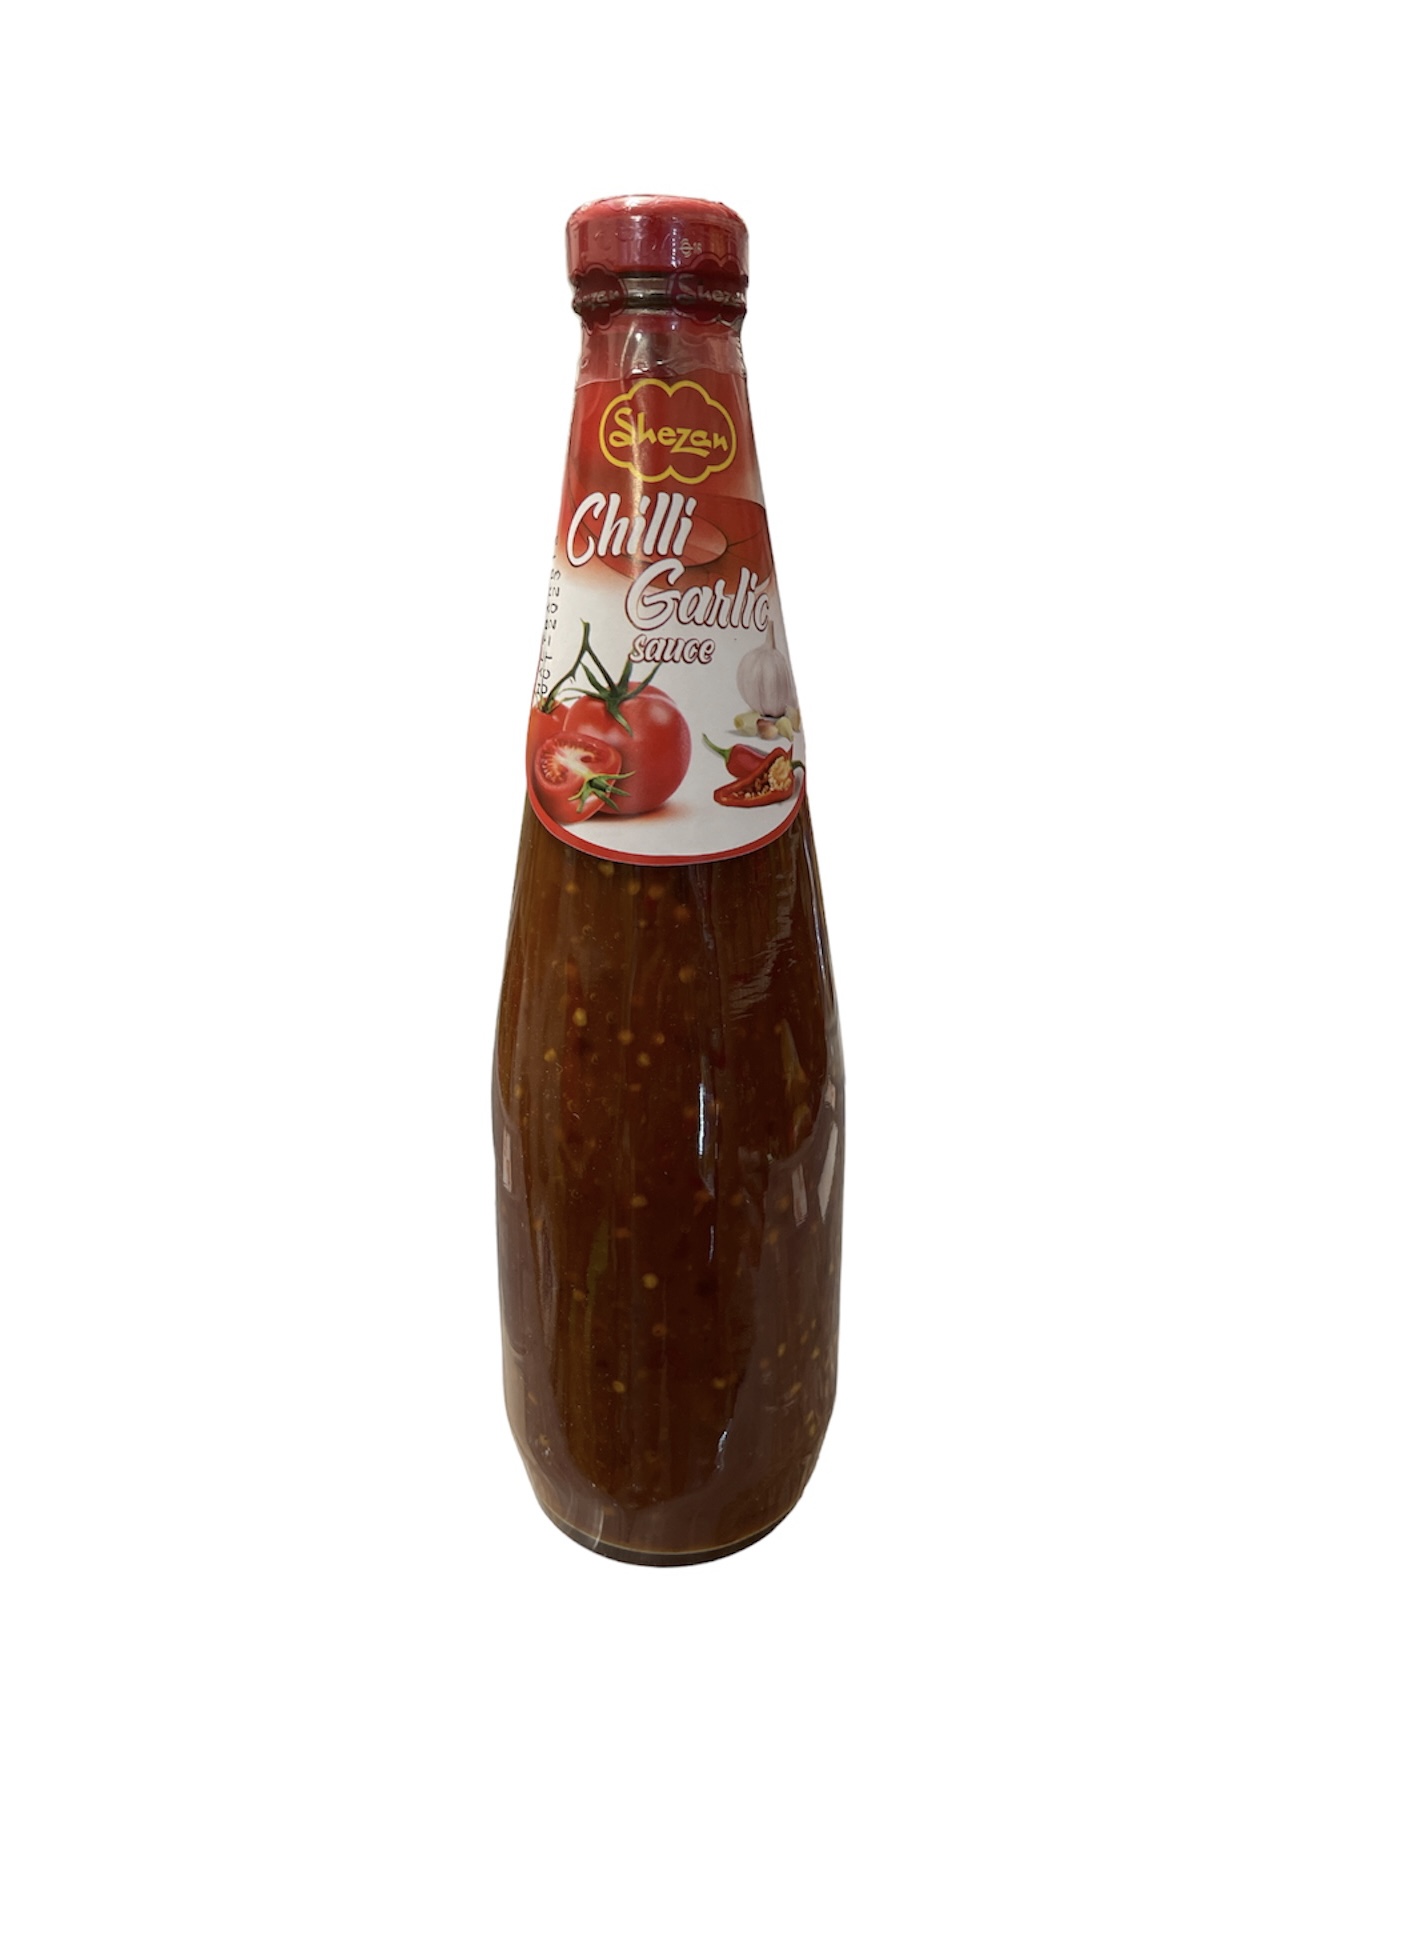 Shezan Chilli Garlic Sauce 830g